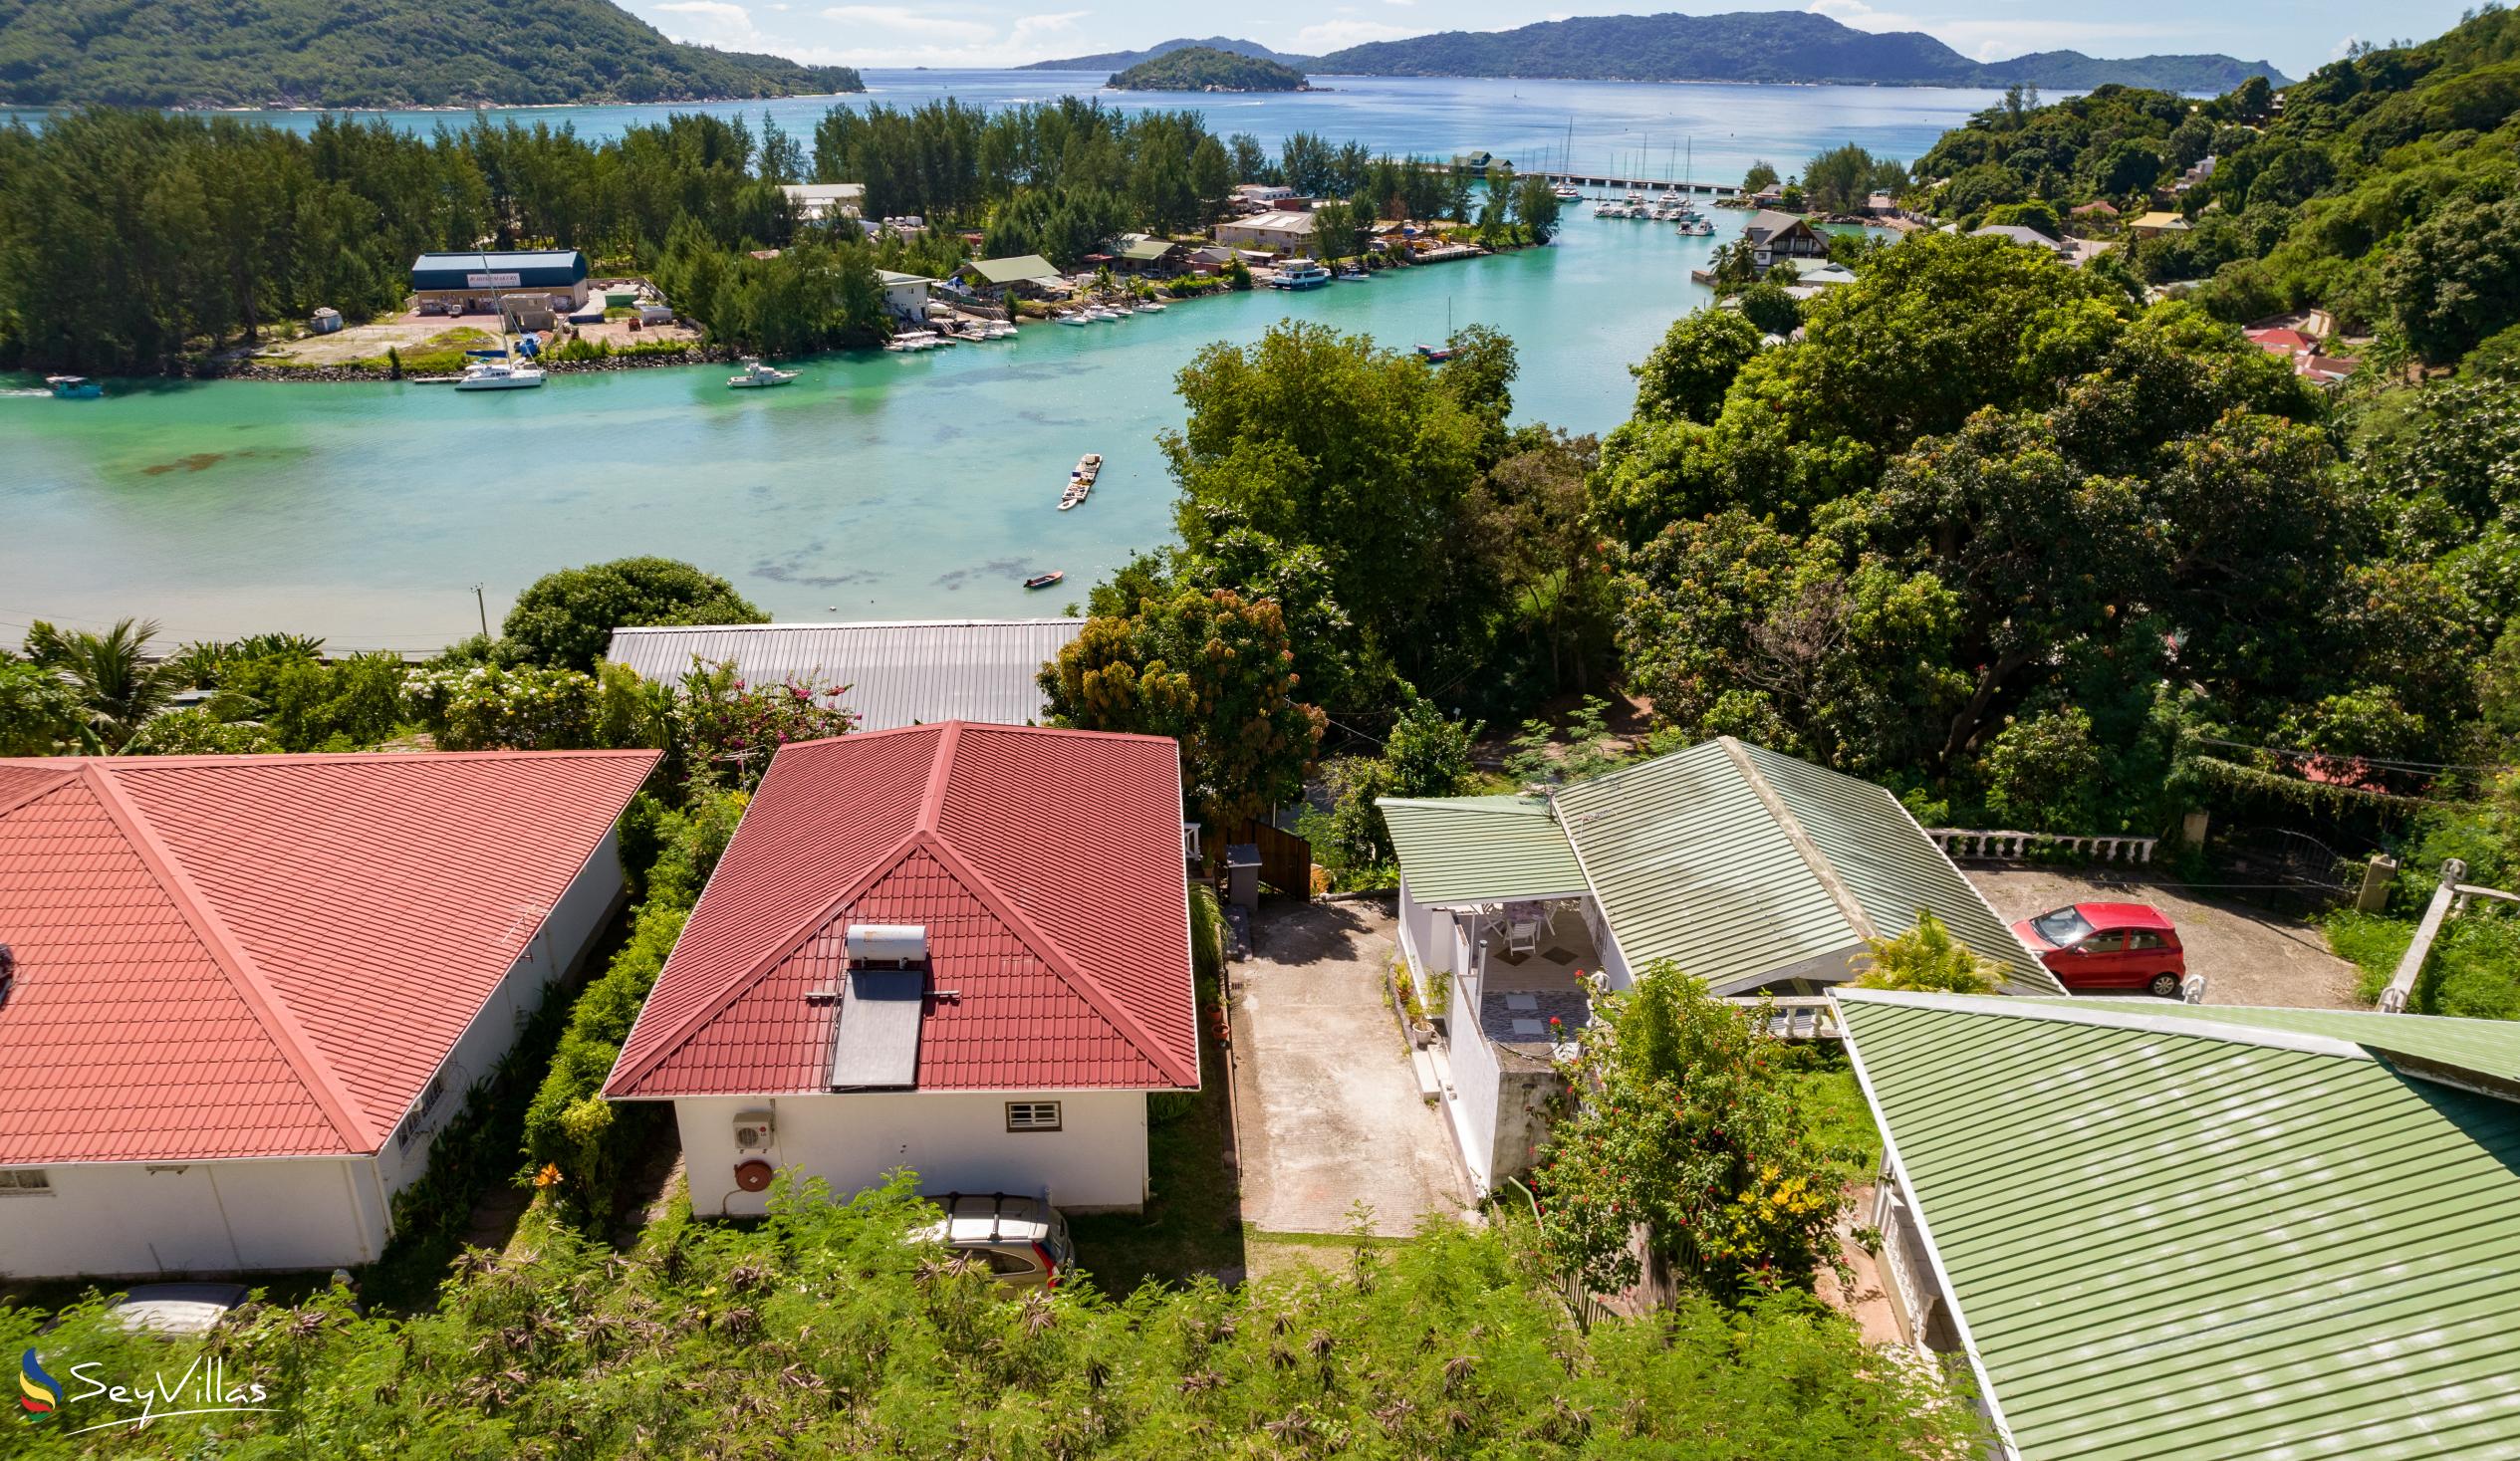 Foto 1: Baie Ste Anne Maison des Vacanze - Aussenbereich - Praslin (Seychellen)